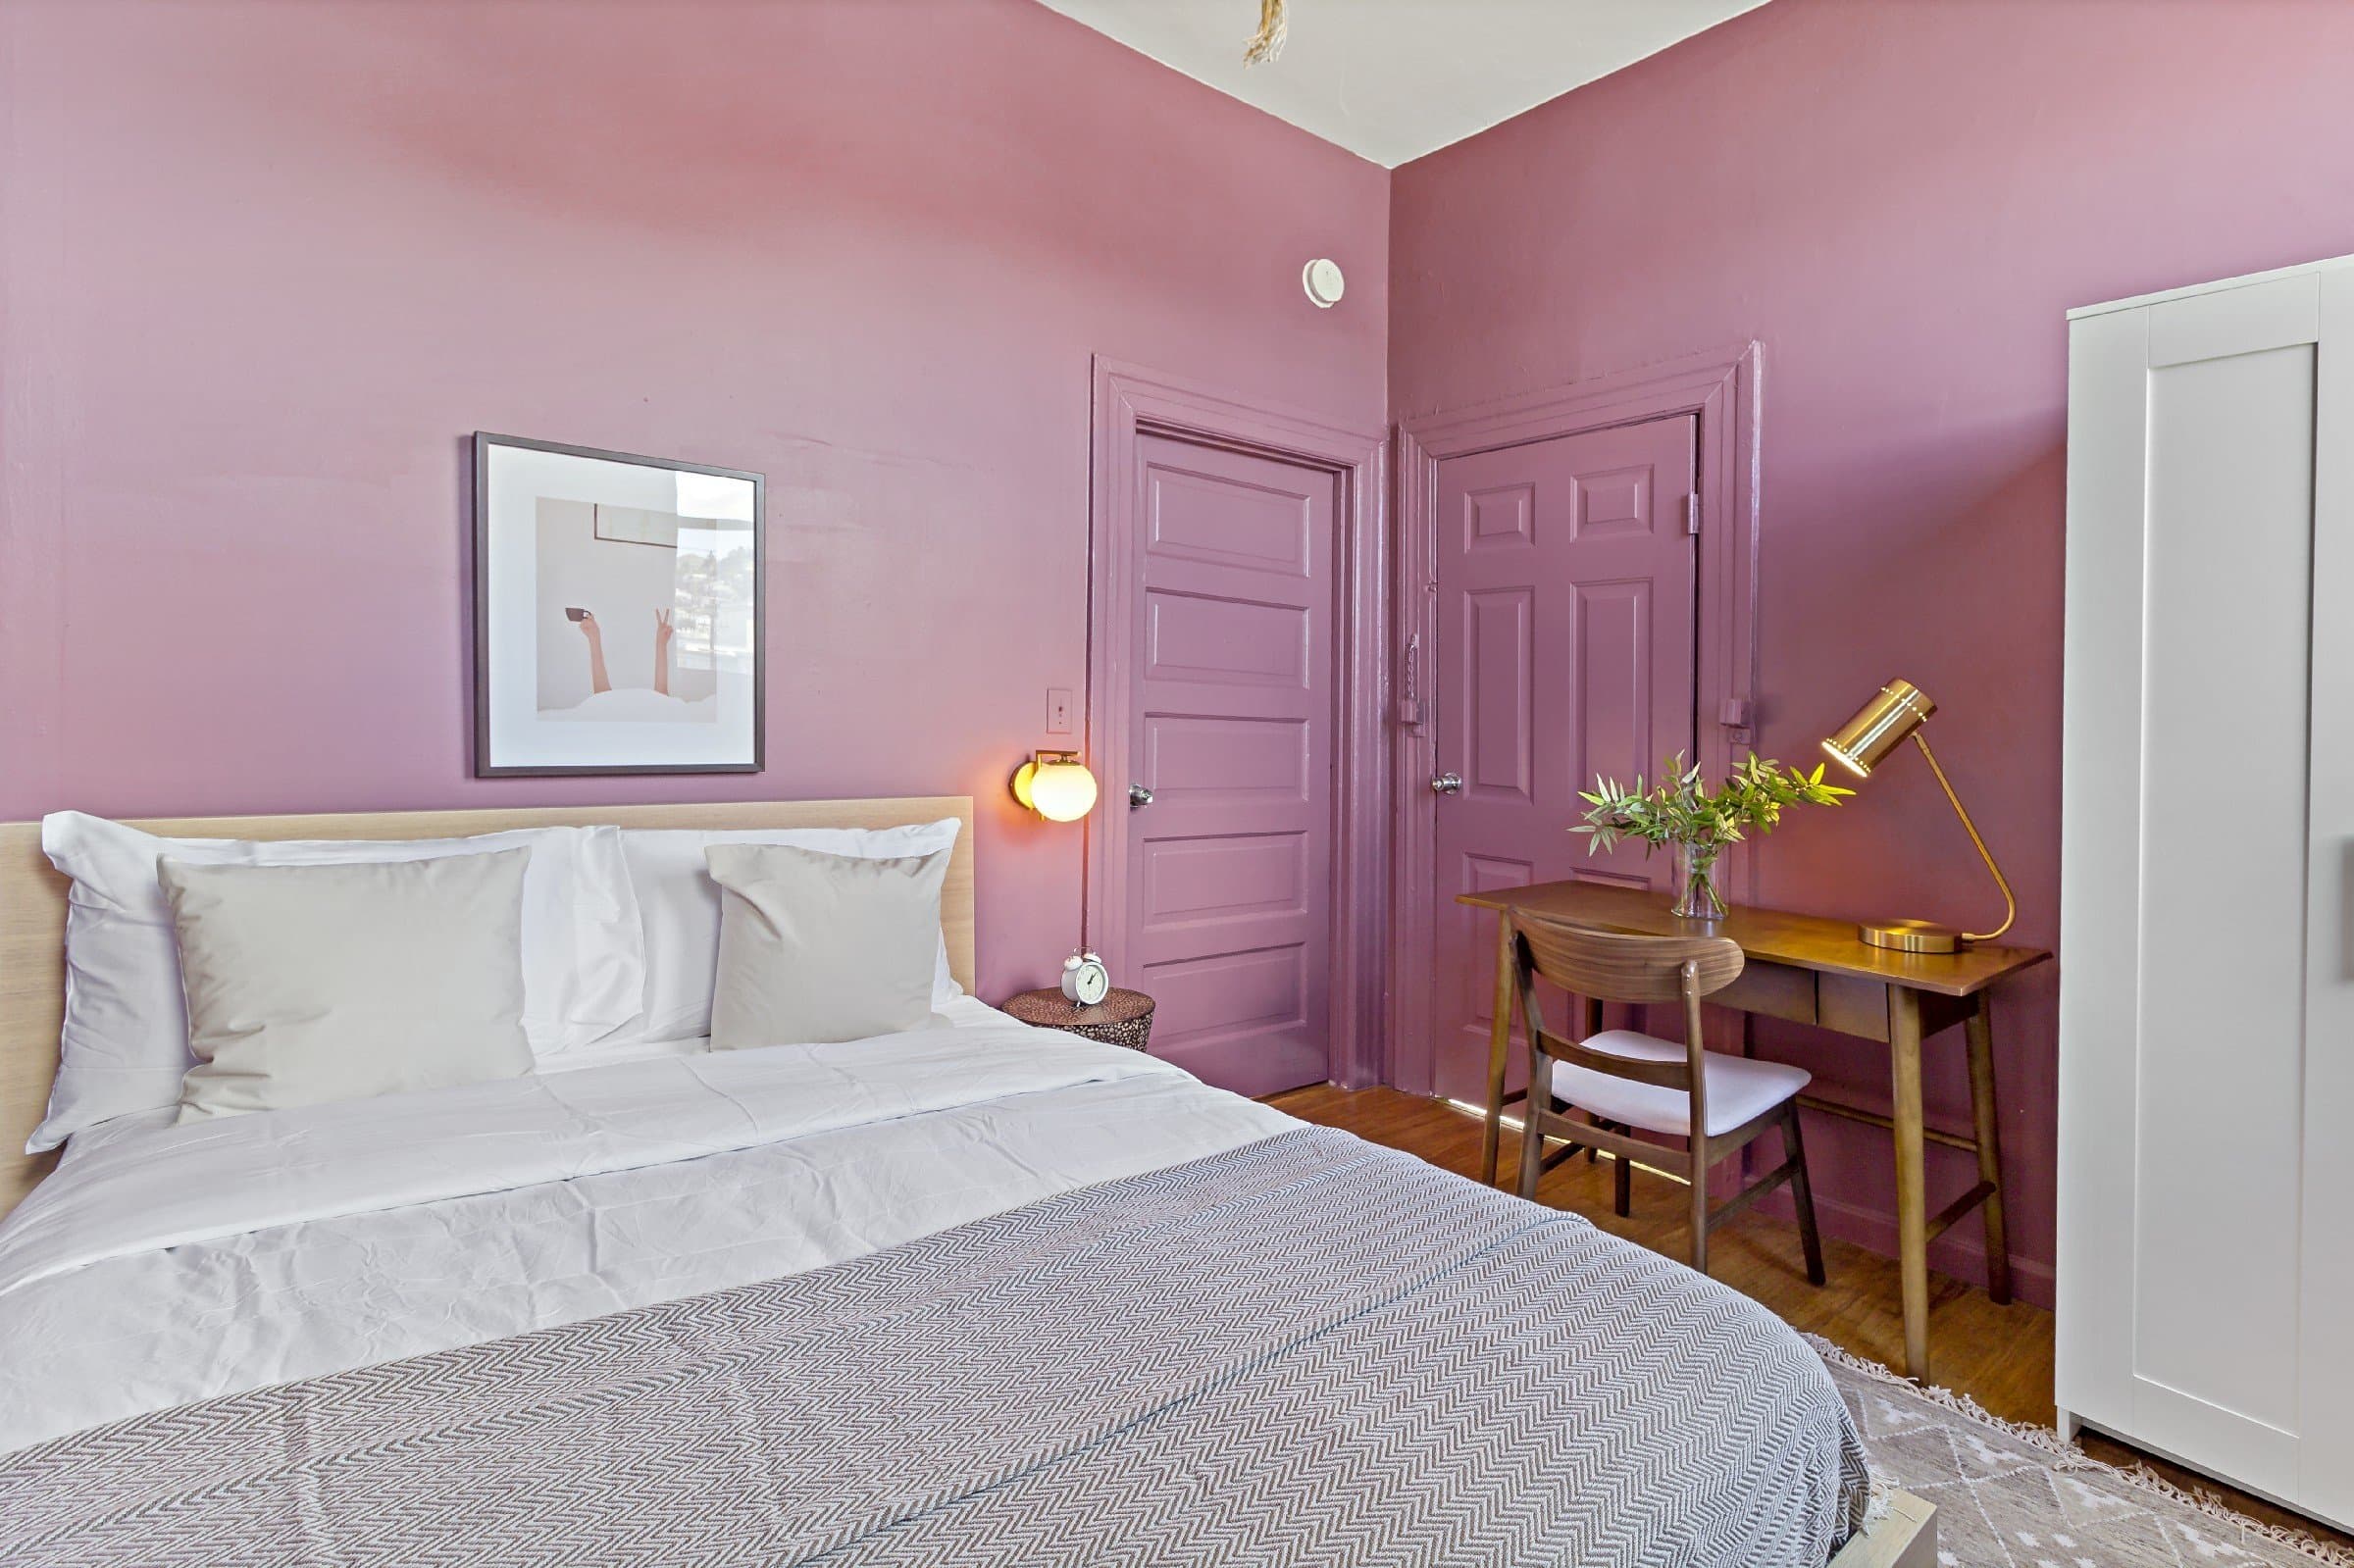 Photo 14 of #902: Queen Bedroom B at June Homes